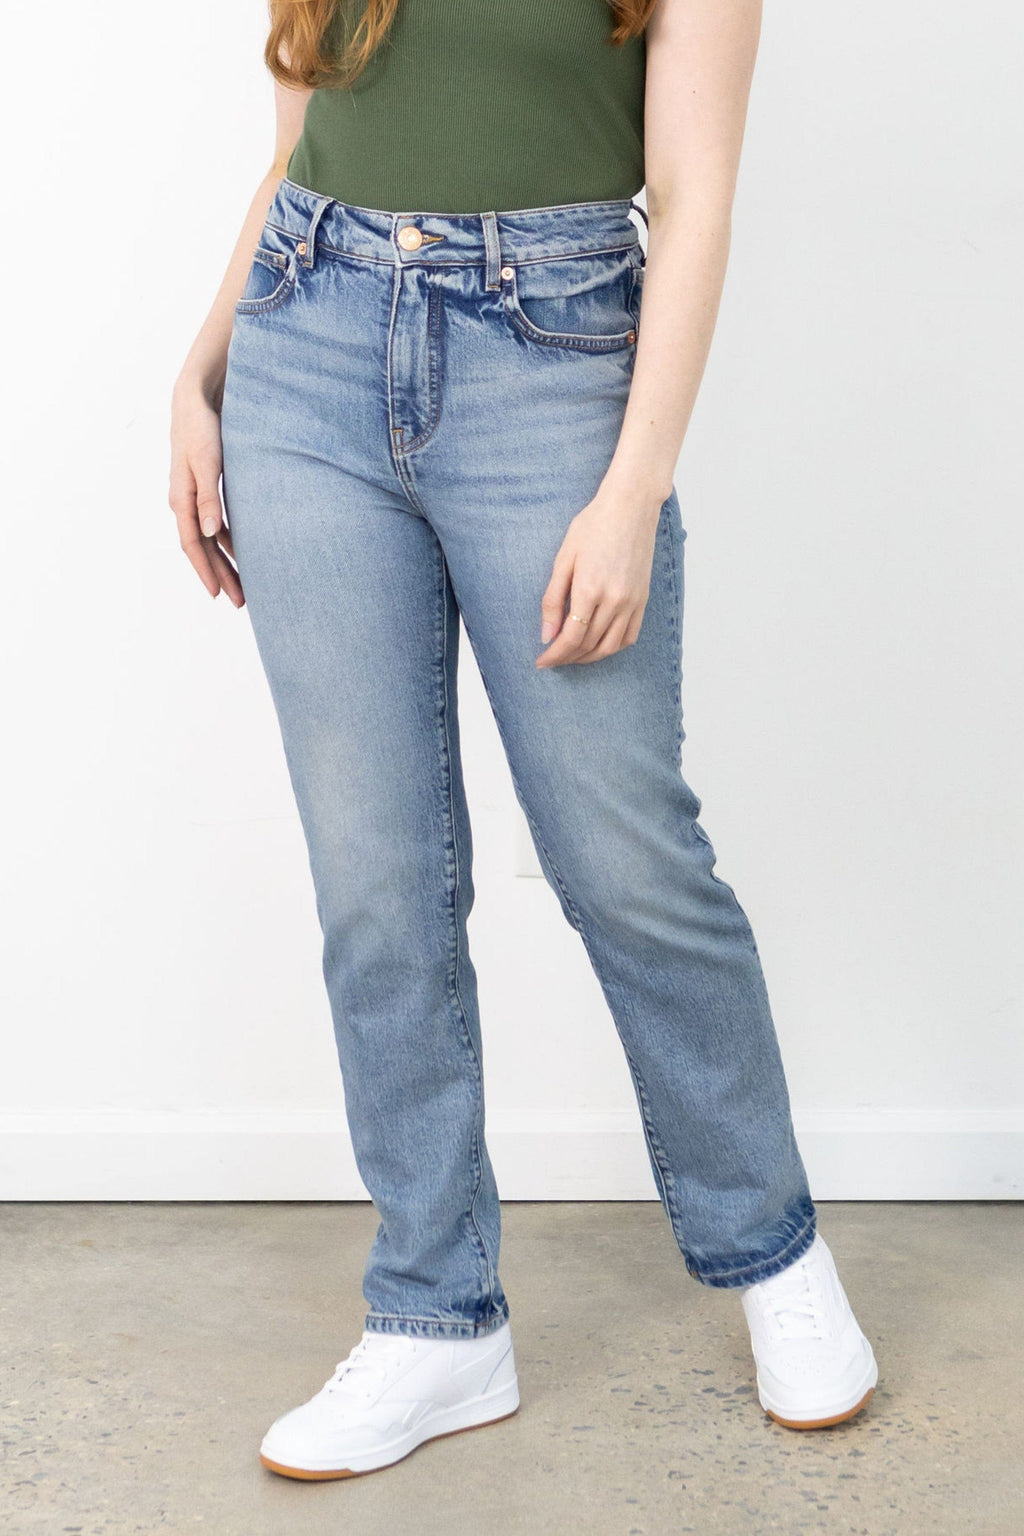 The Girlfriend Jean, Bloat-Friendly Jeans